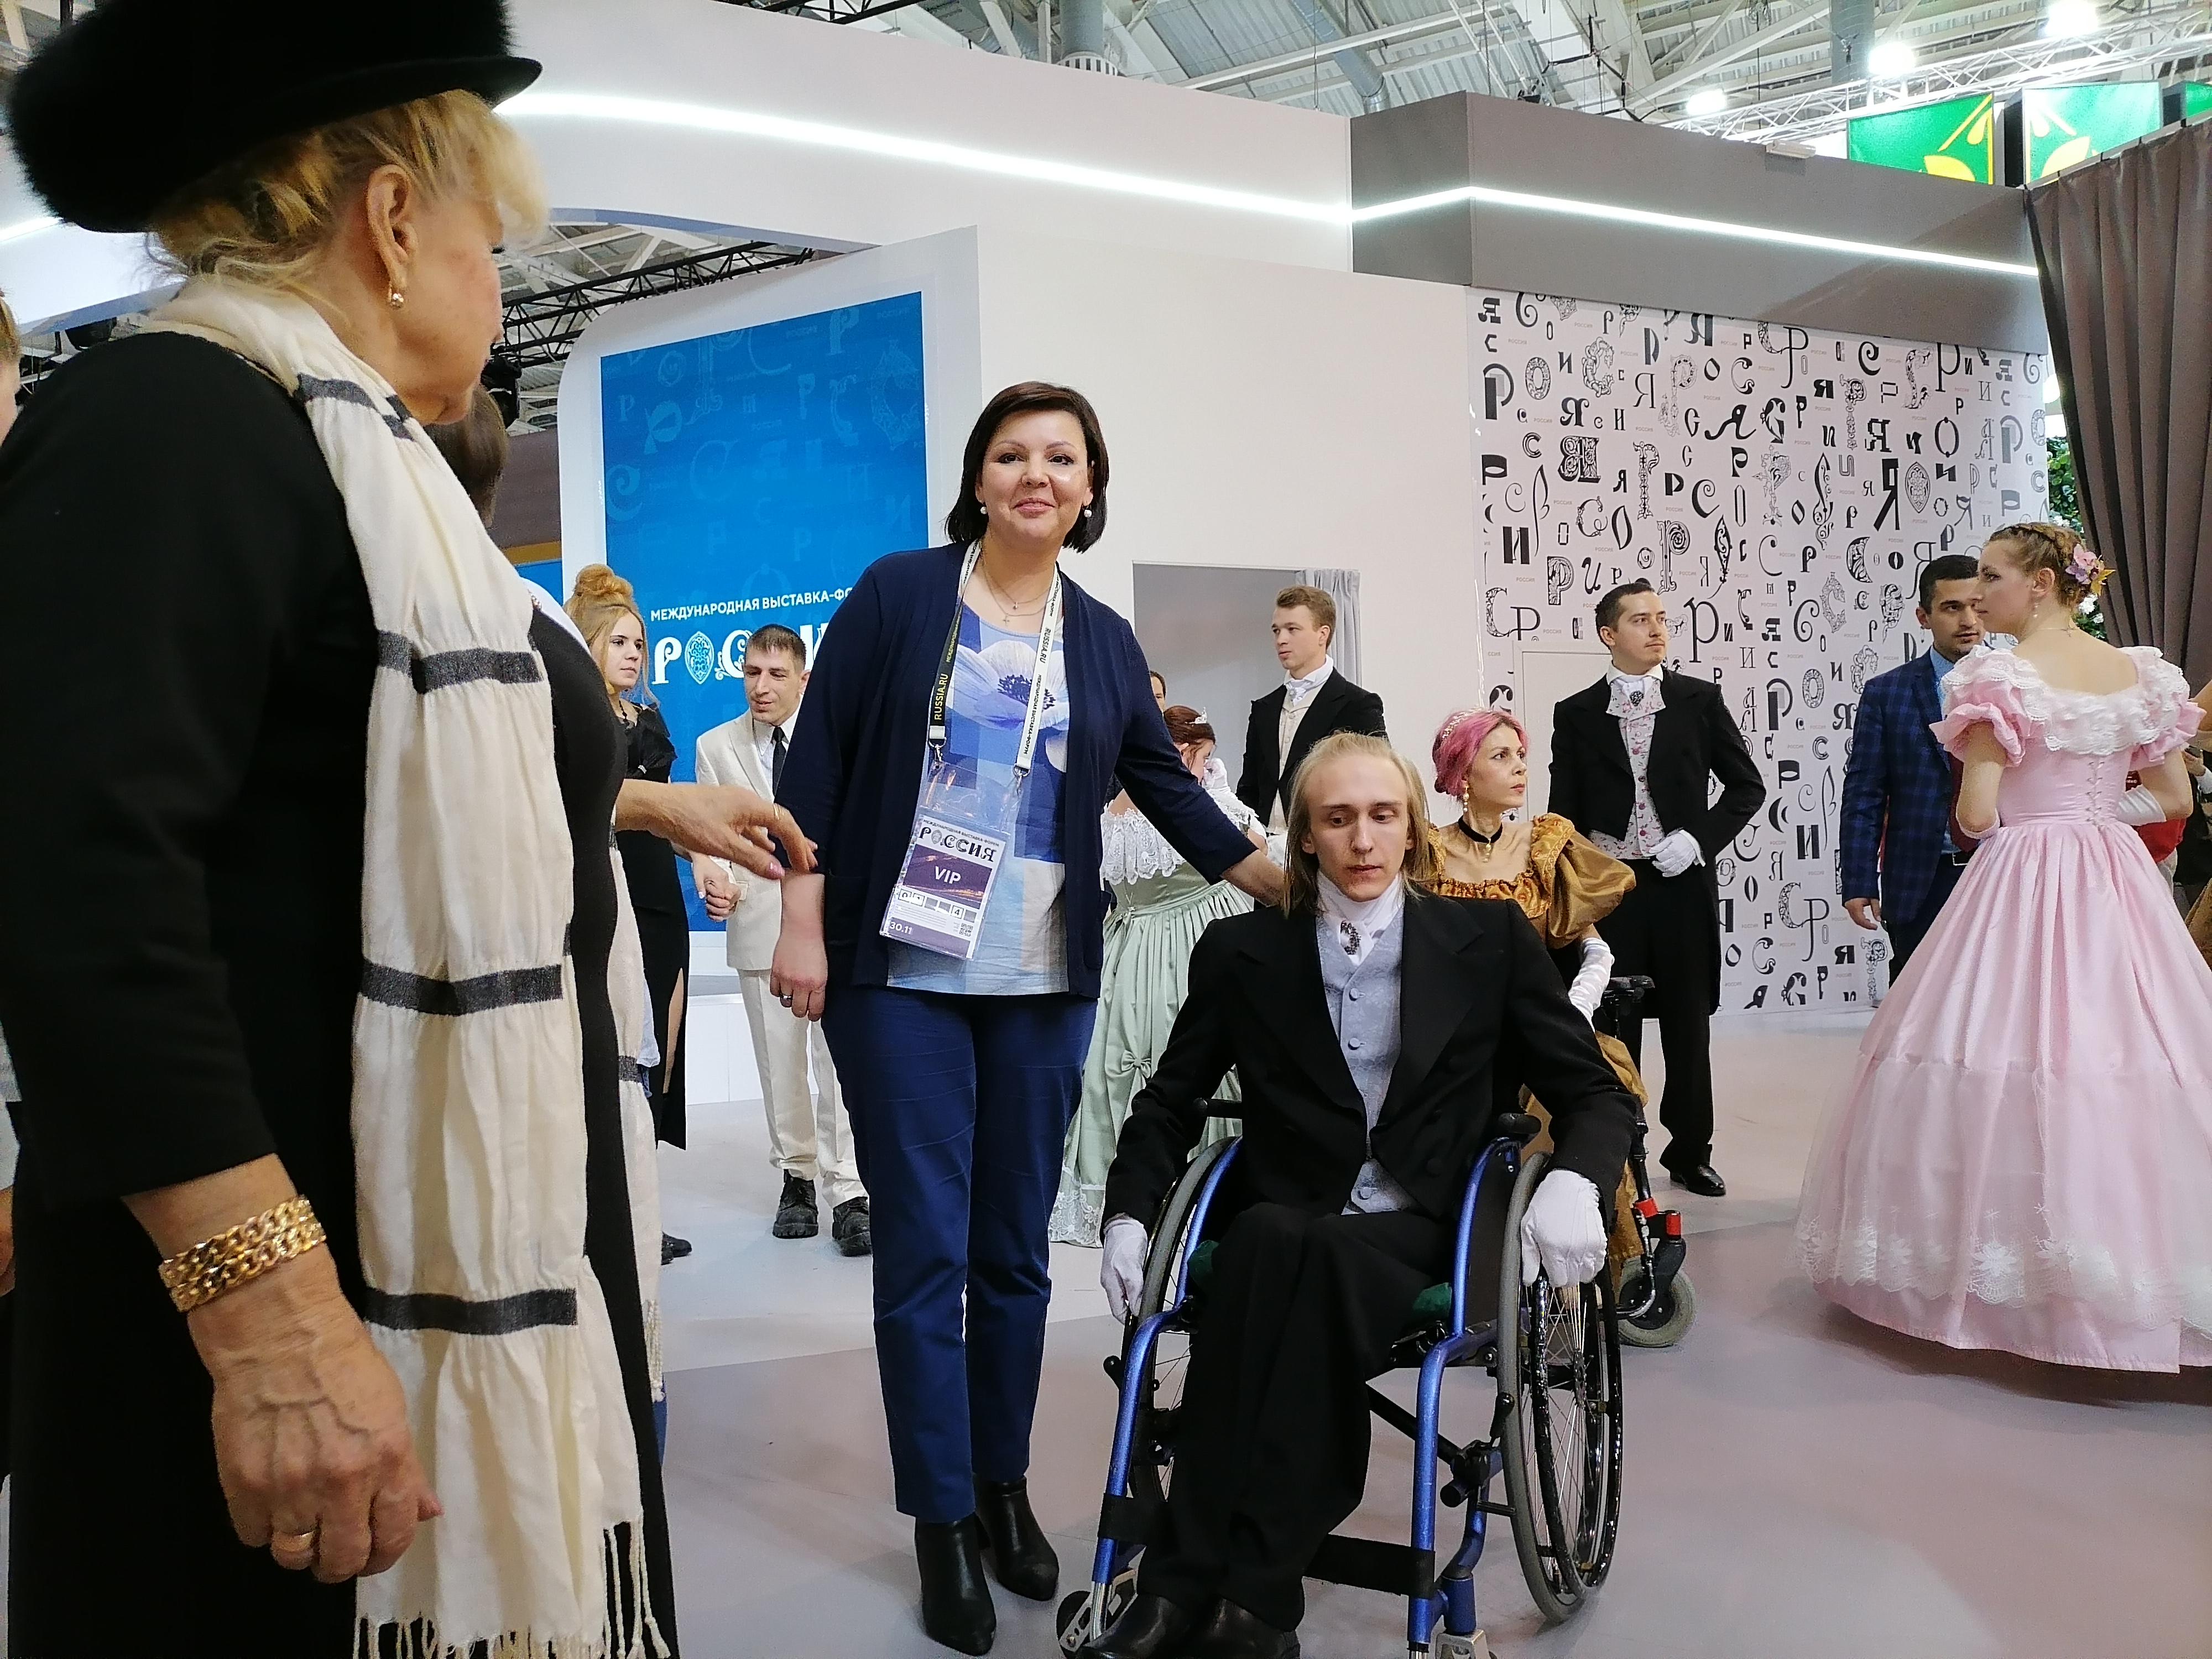 Самарский проект "Инклюзивный бал" поразил гостей выставки "Россия"